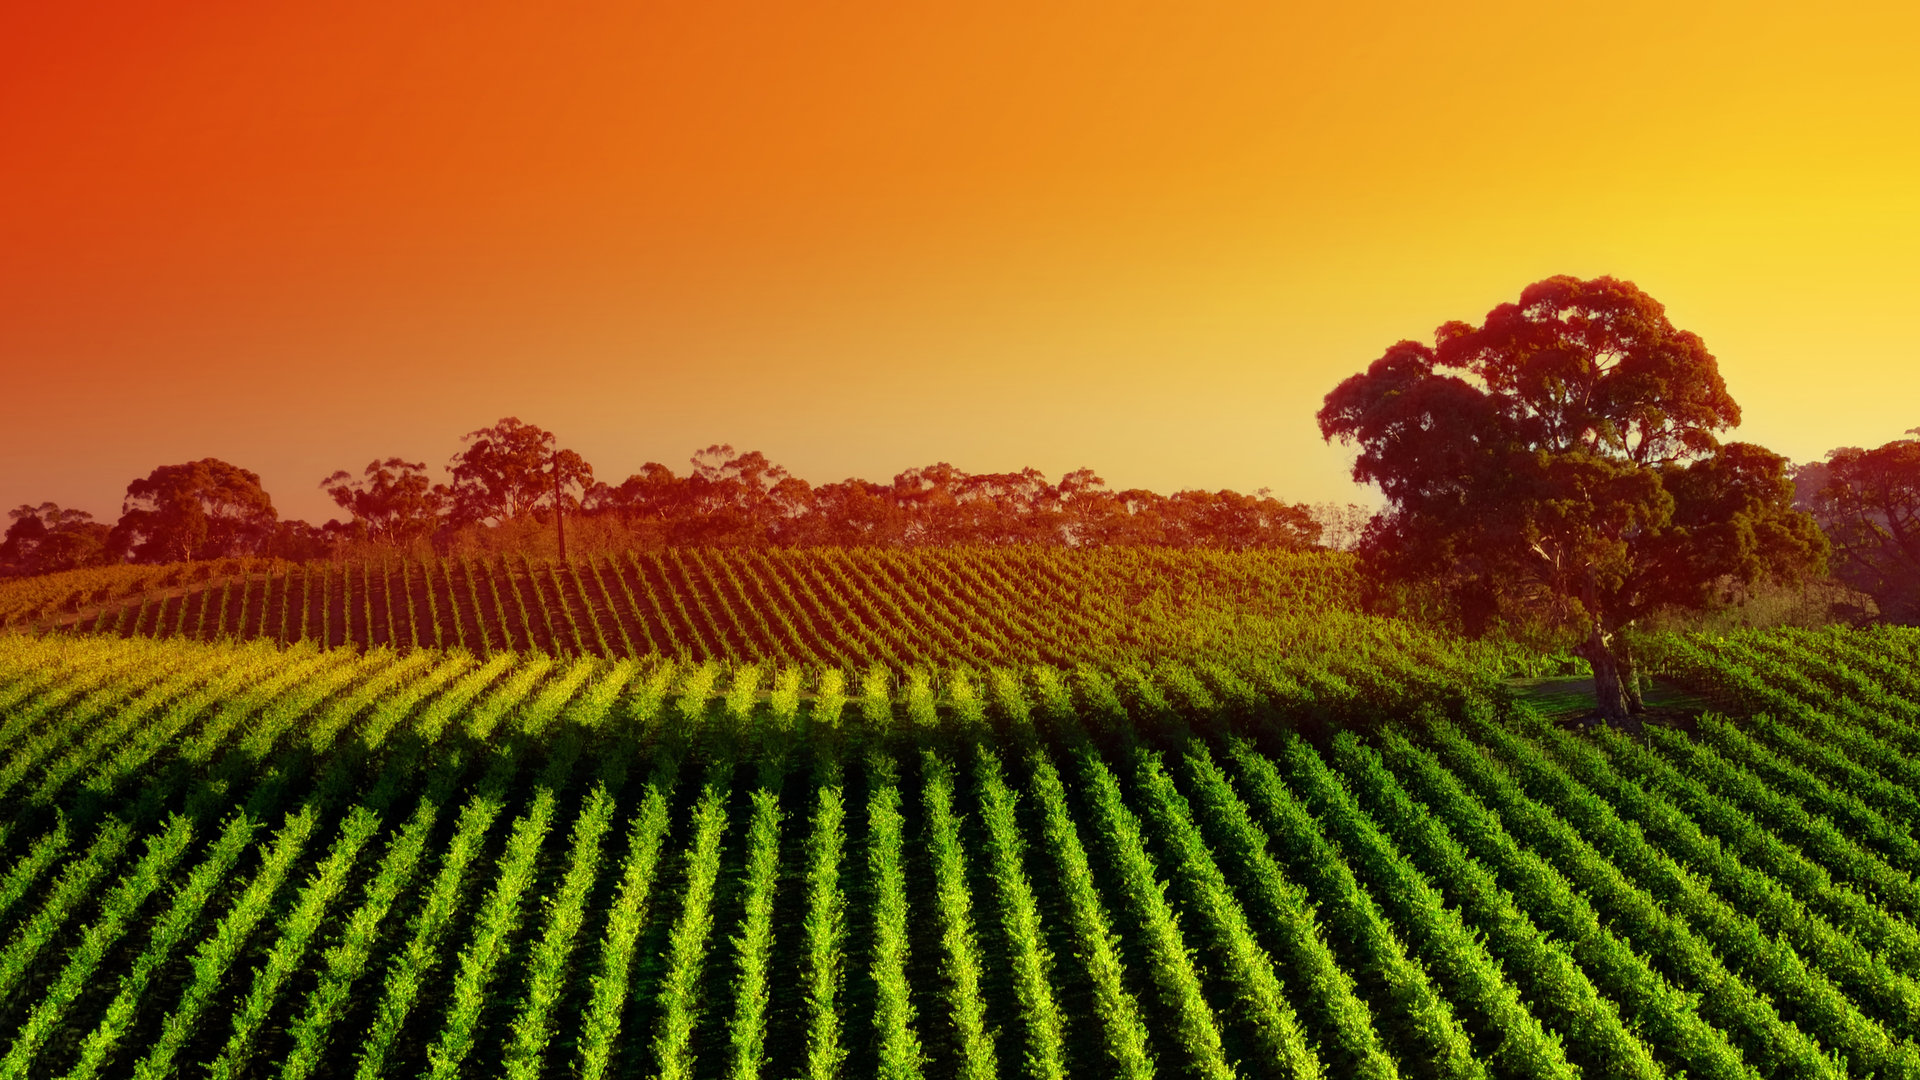 Vineyard Sunset Widescreen Wallpaper Wallpaperlepi